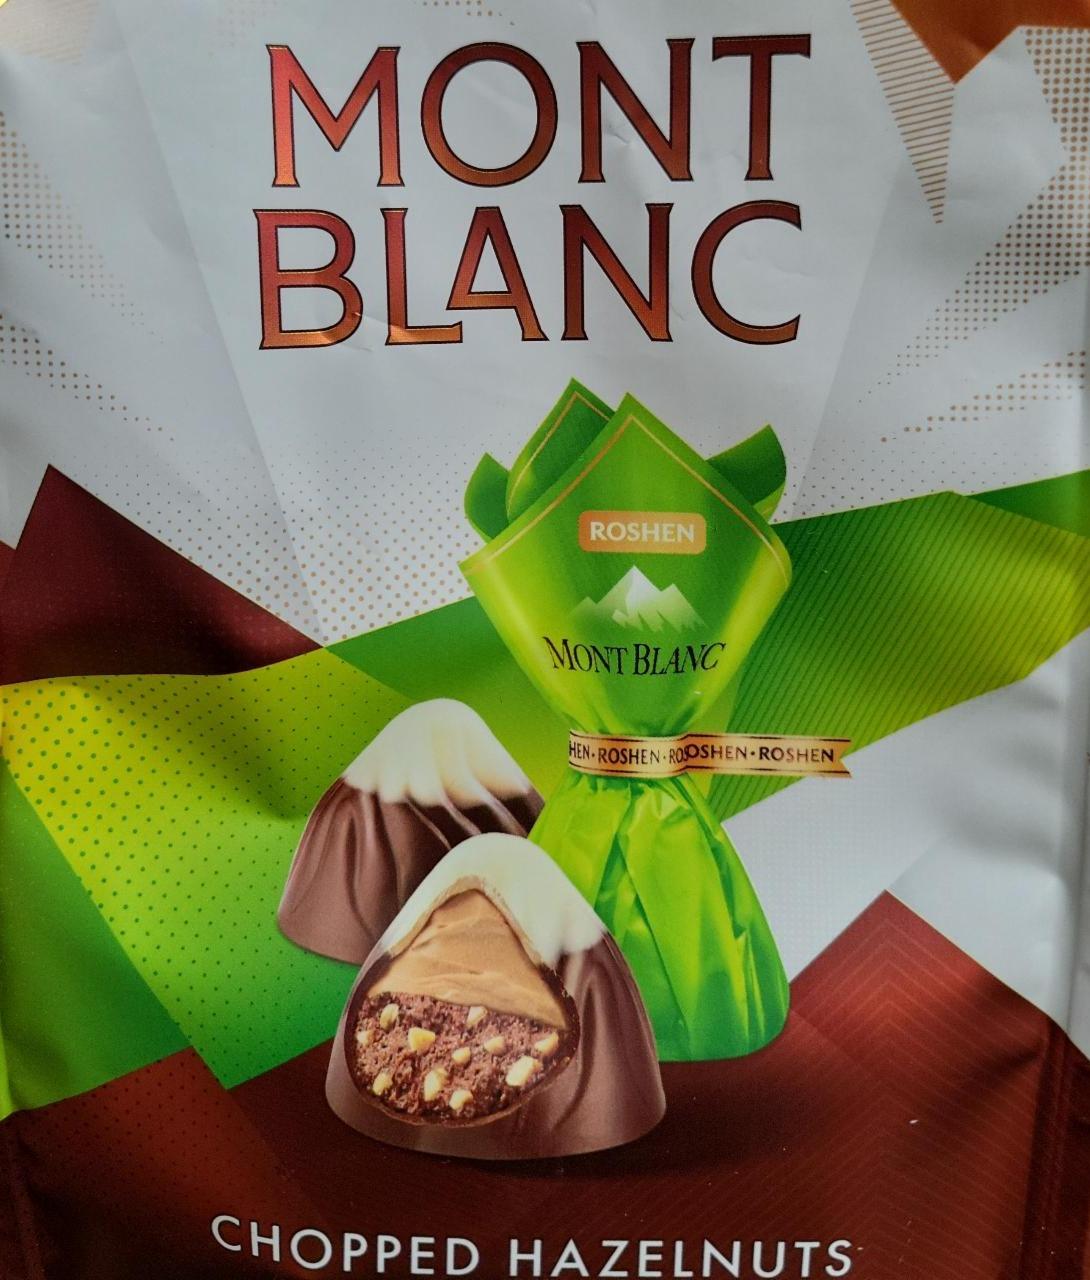 Фото - Цукерки шоколадні крем-праліне з подрібненим лісовим горіхом Mont Blanc Roshen